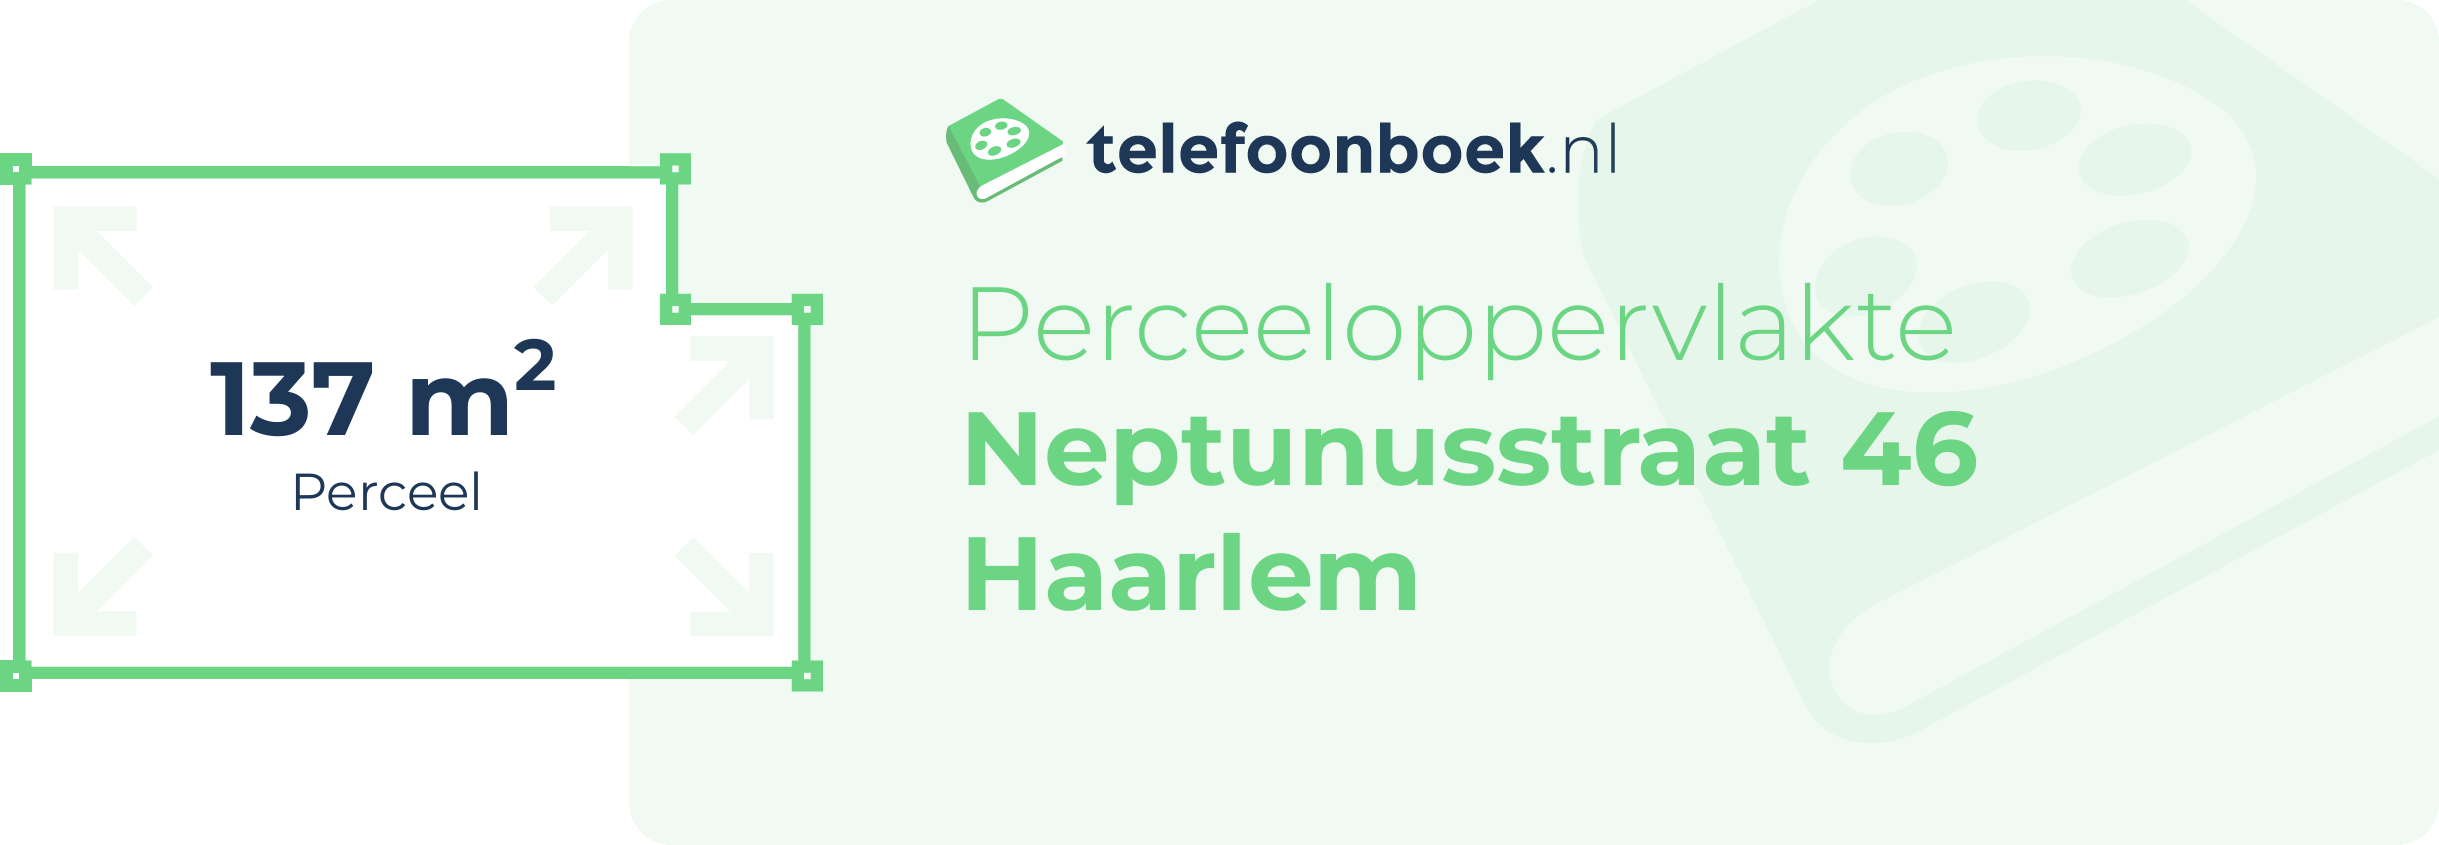 Perceeloppervlakte Neptunusstraat 46 Haarlem